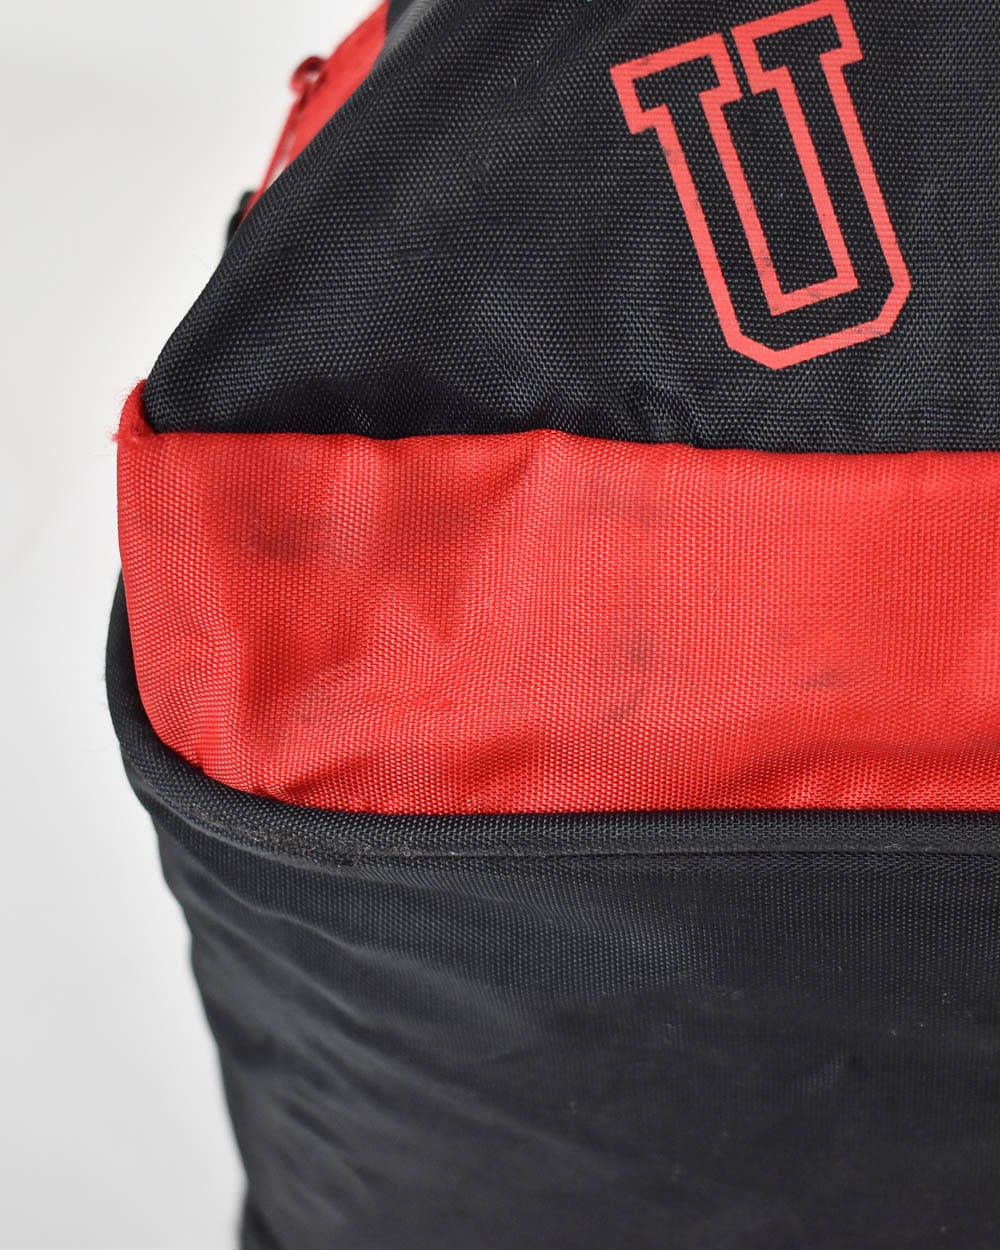 Nike Red and black Sports/School Backpack RN56323 | eBay